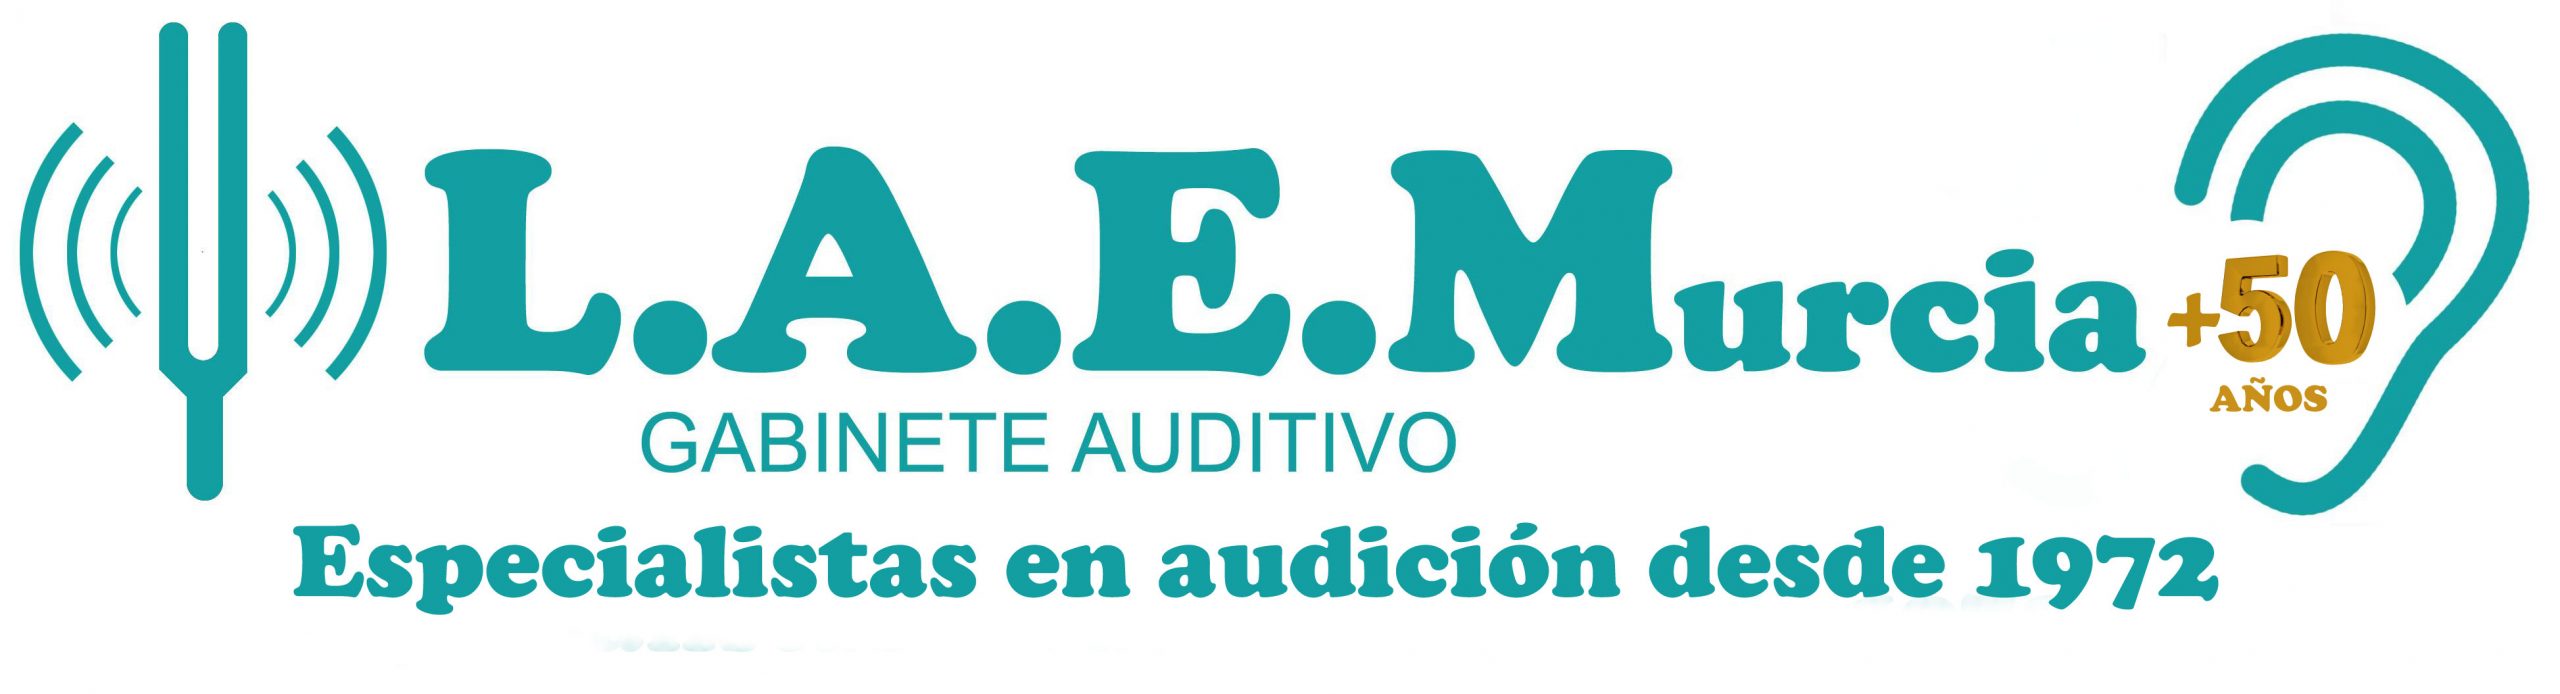 Audífonos Murcia. L.A.E.Murcia Gabinete Auditivo. Especialistas en audición desde 1972.